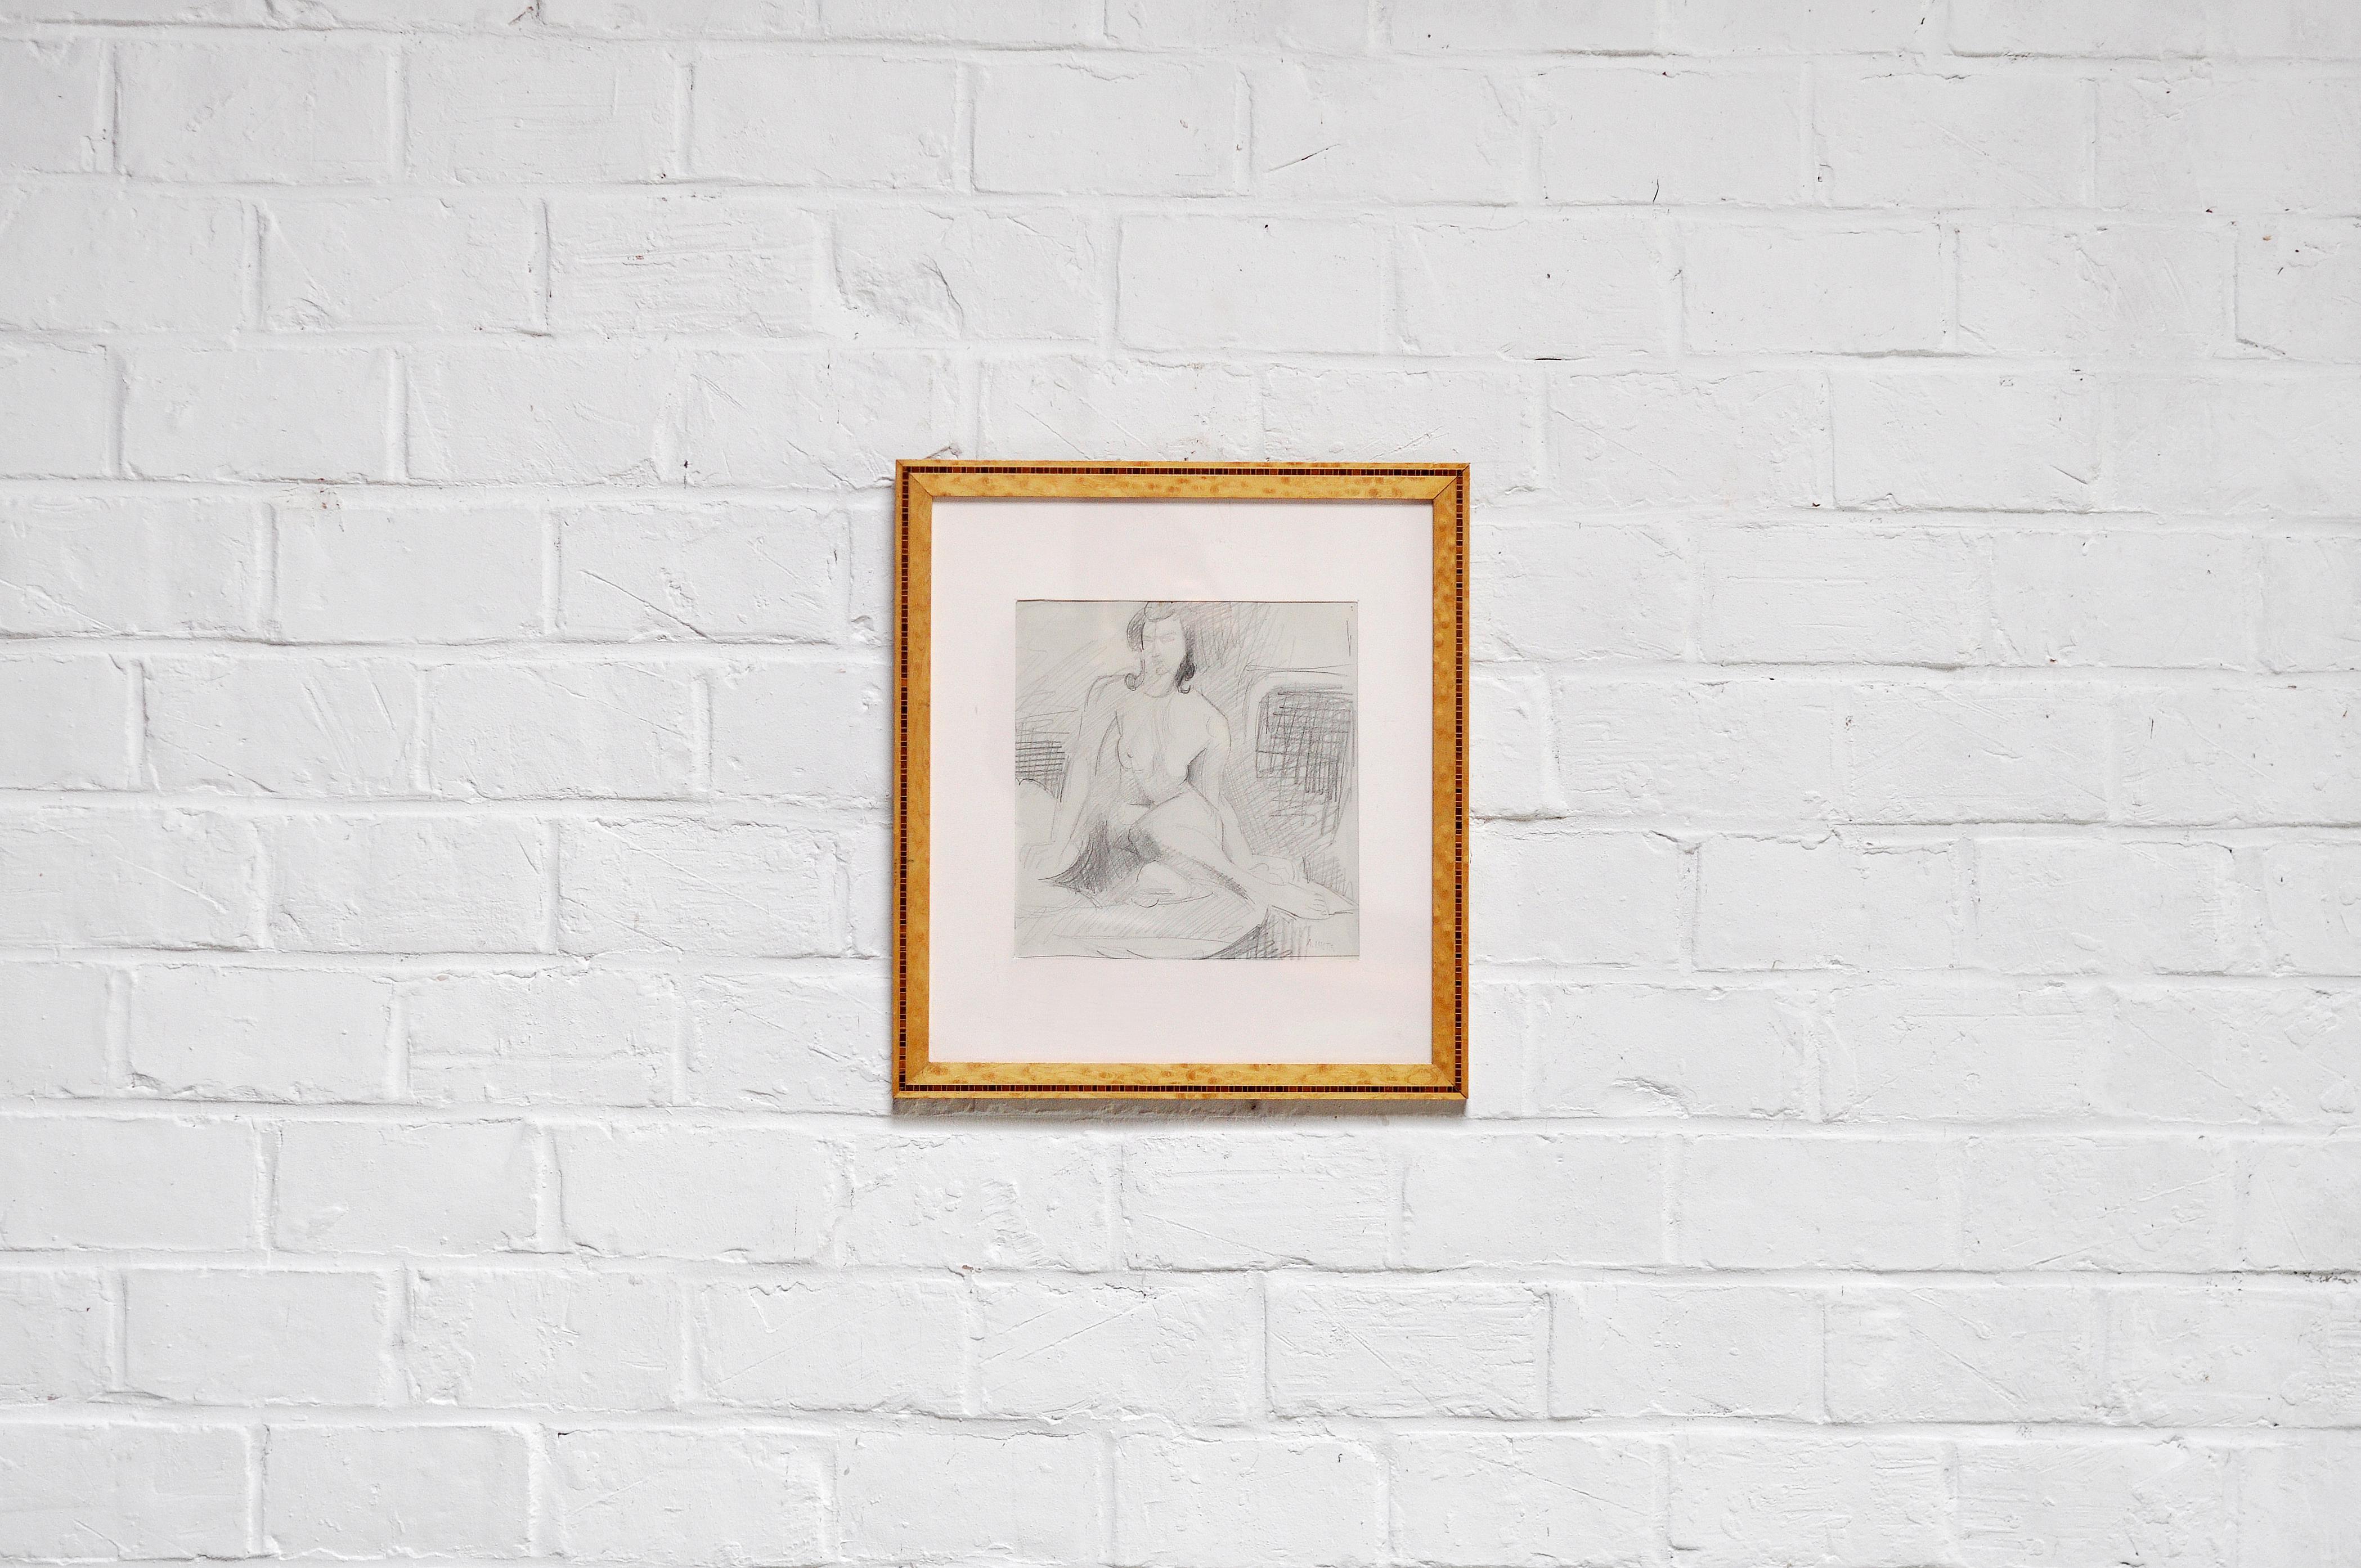 DETAILS
Bleistiftzeichnung des französischen Künstlers André Lhote (1885 - 1962). Sitzende nackte Frau, gezeichnet im Atelier von Lhote, um 1920. Dieses Werk ist hinter Glas gerahmt und in der rechten unteren Ecke signiert.


ABMESSUNGEN
25 x 23 cm